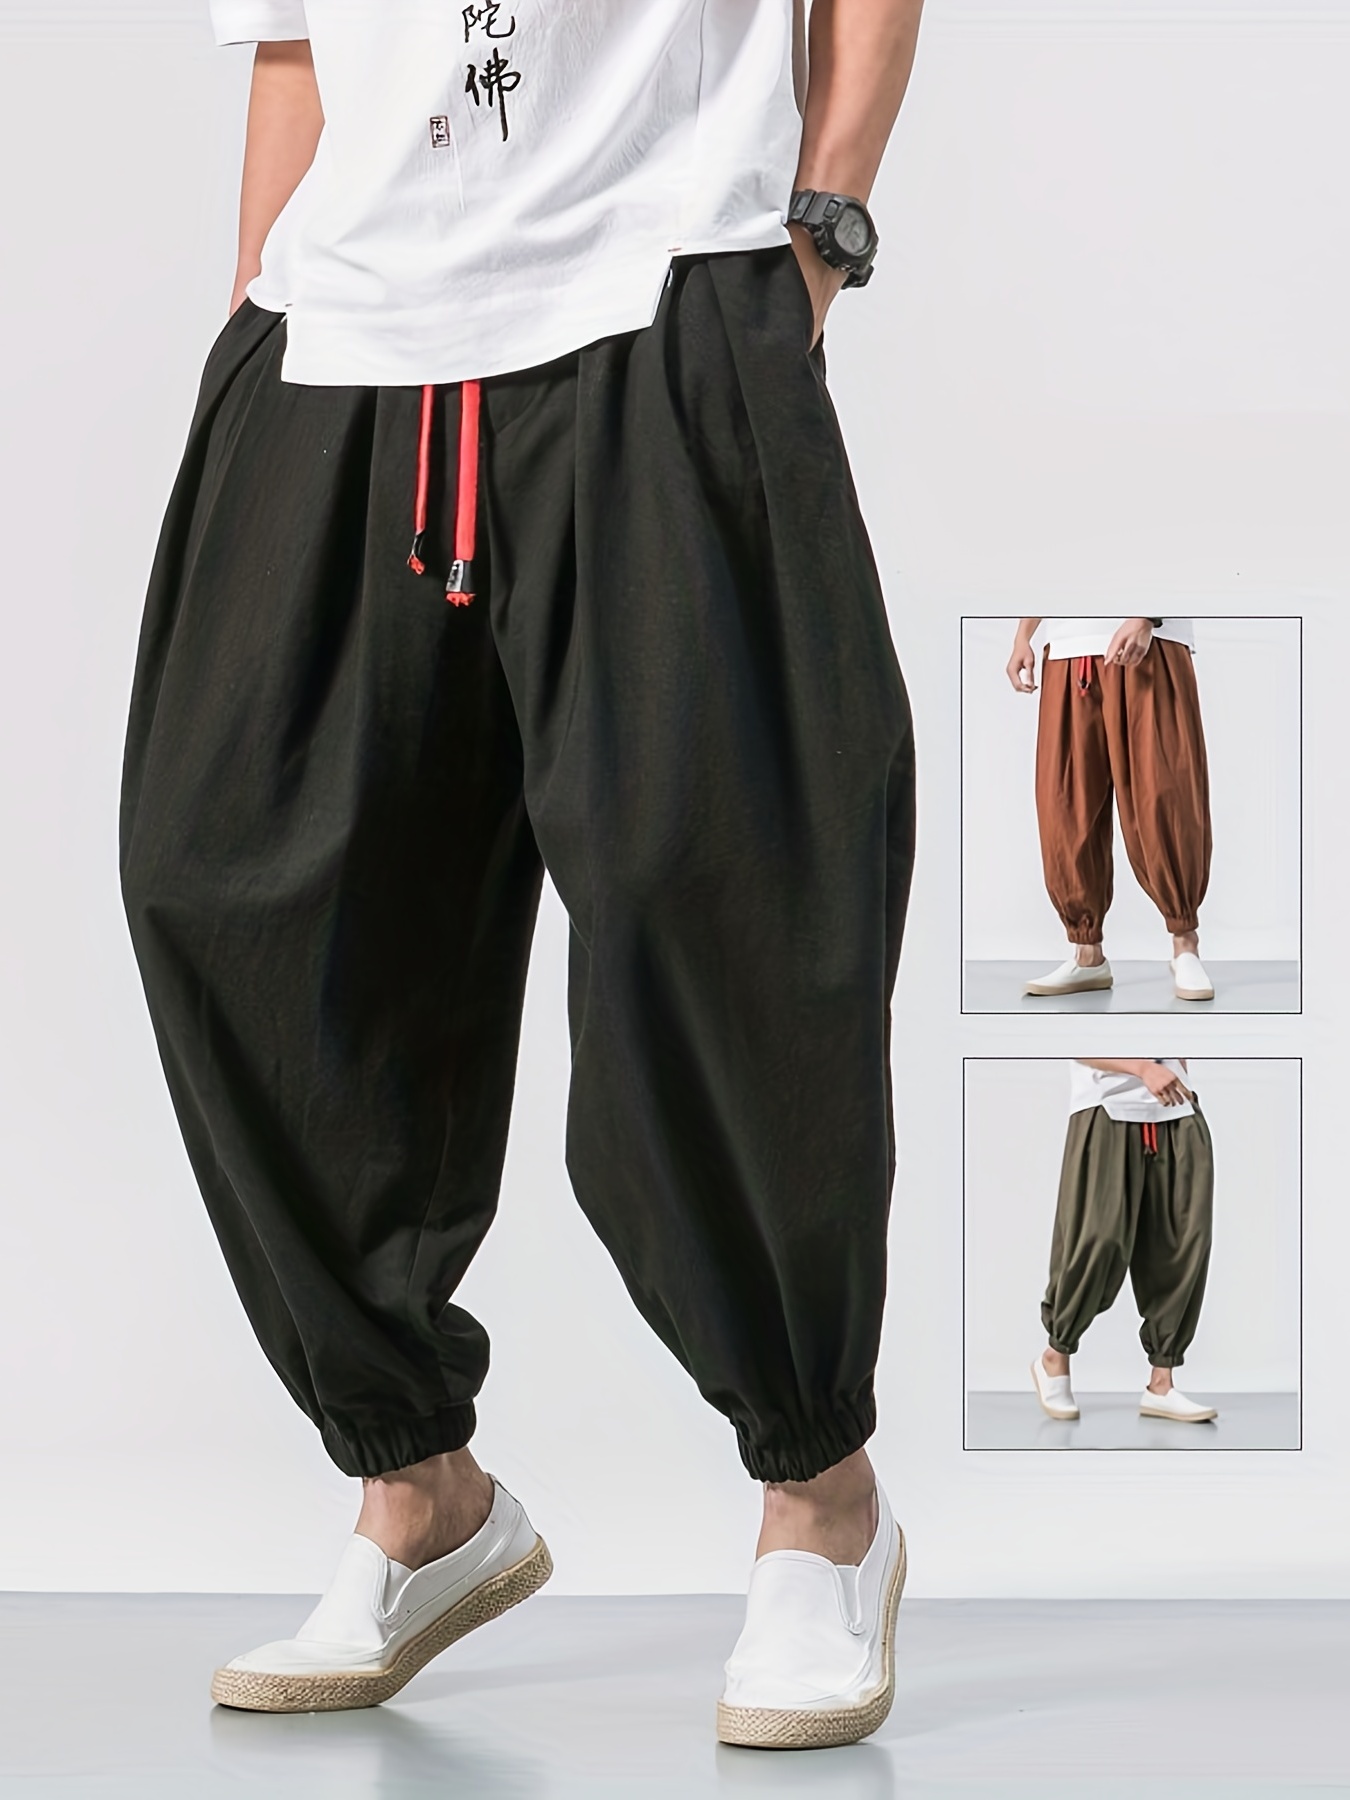 34 Harem Pants. ideas  harem pants, pants, fashion